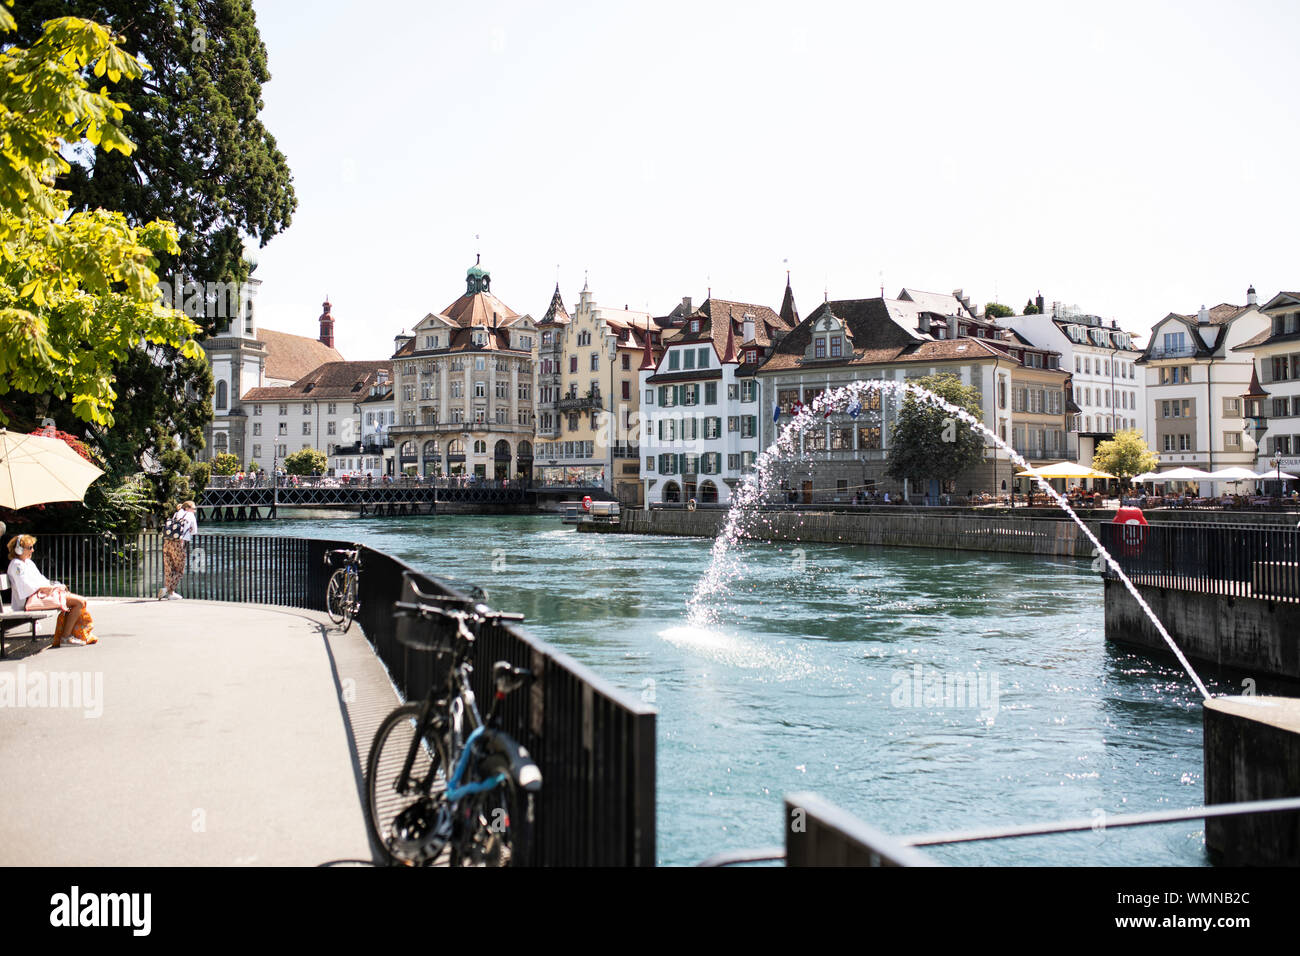 Spruzzi d'acqua dalla diga degli aghi sul fiume Reuss a Lucerna, in Svizzera, in una giornata estiva. Foto Stock